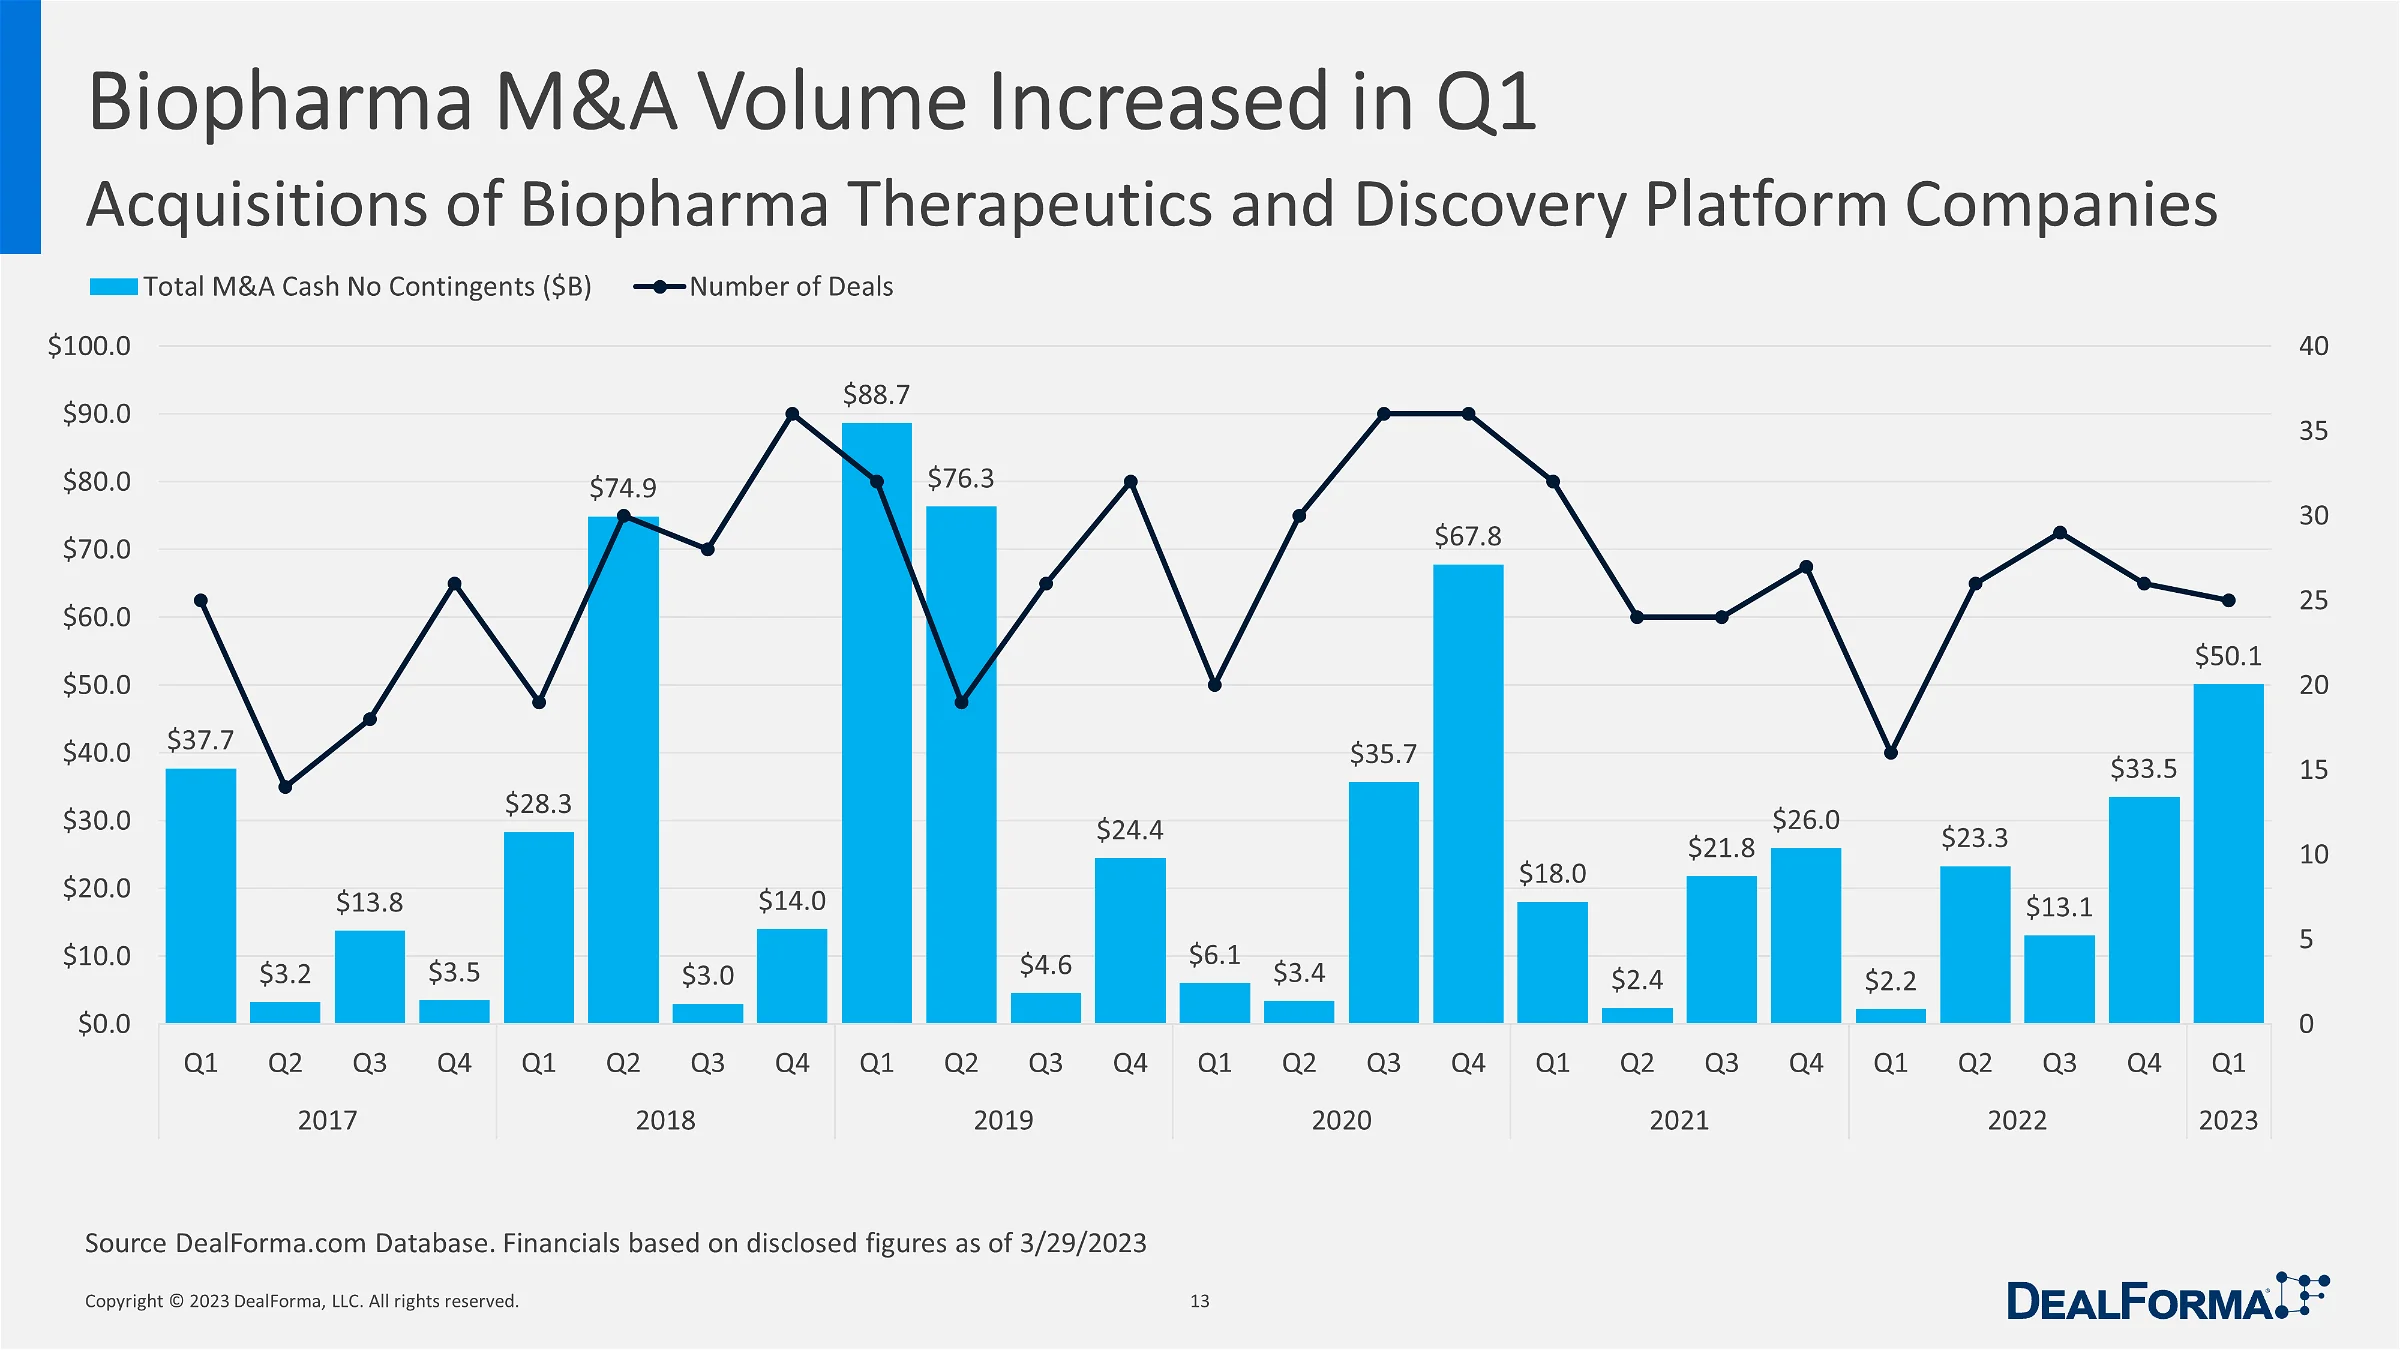 Biopharma MA Volume Increased in Q1